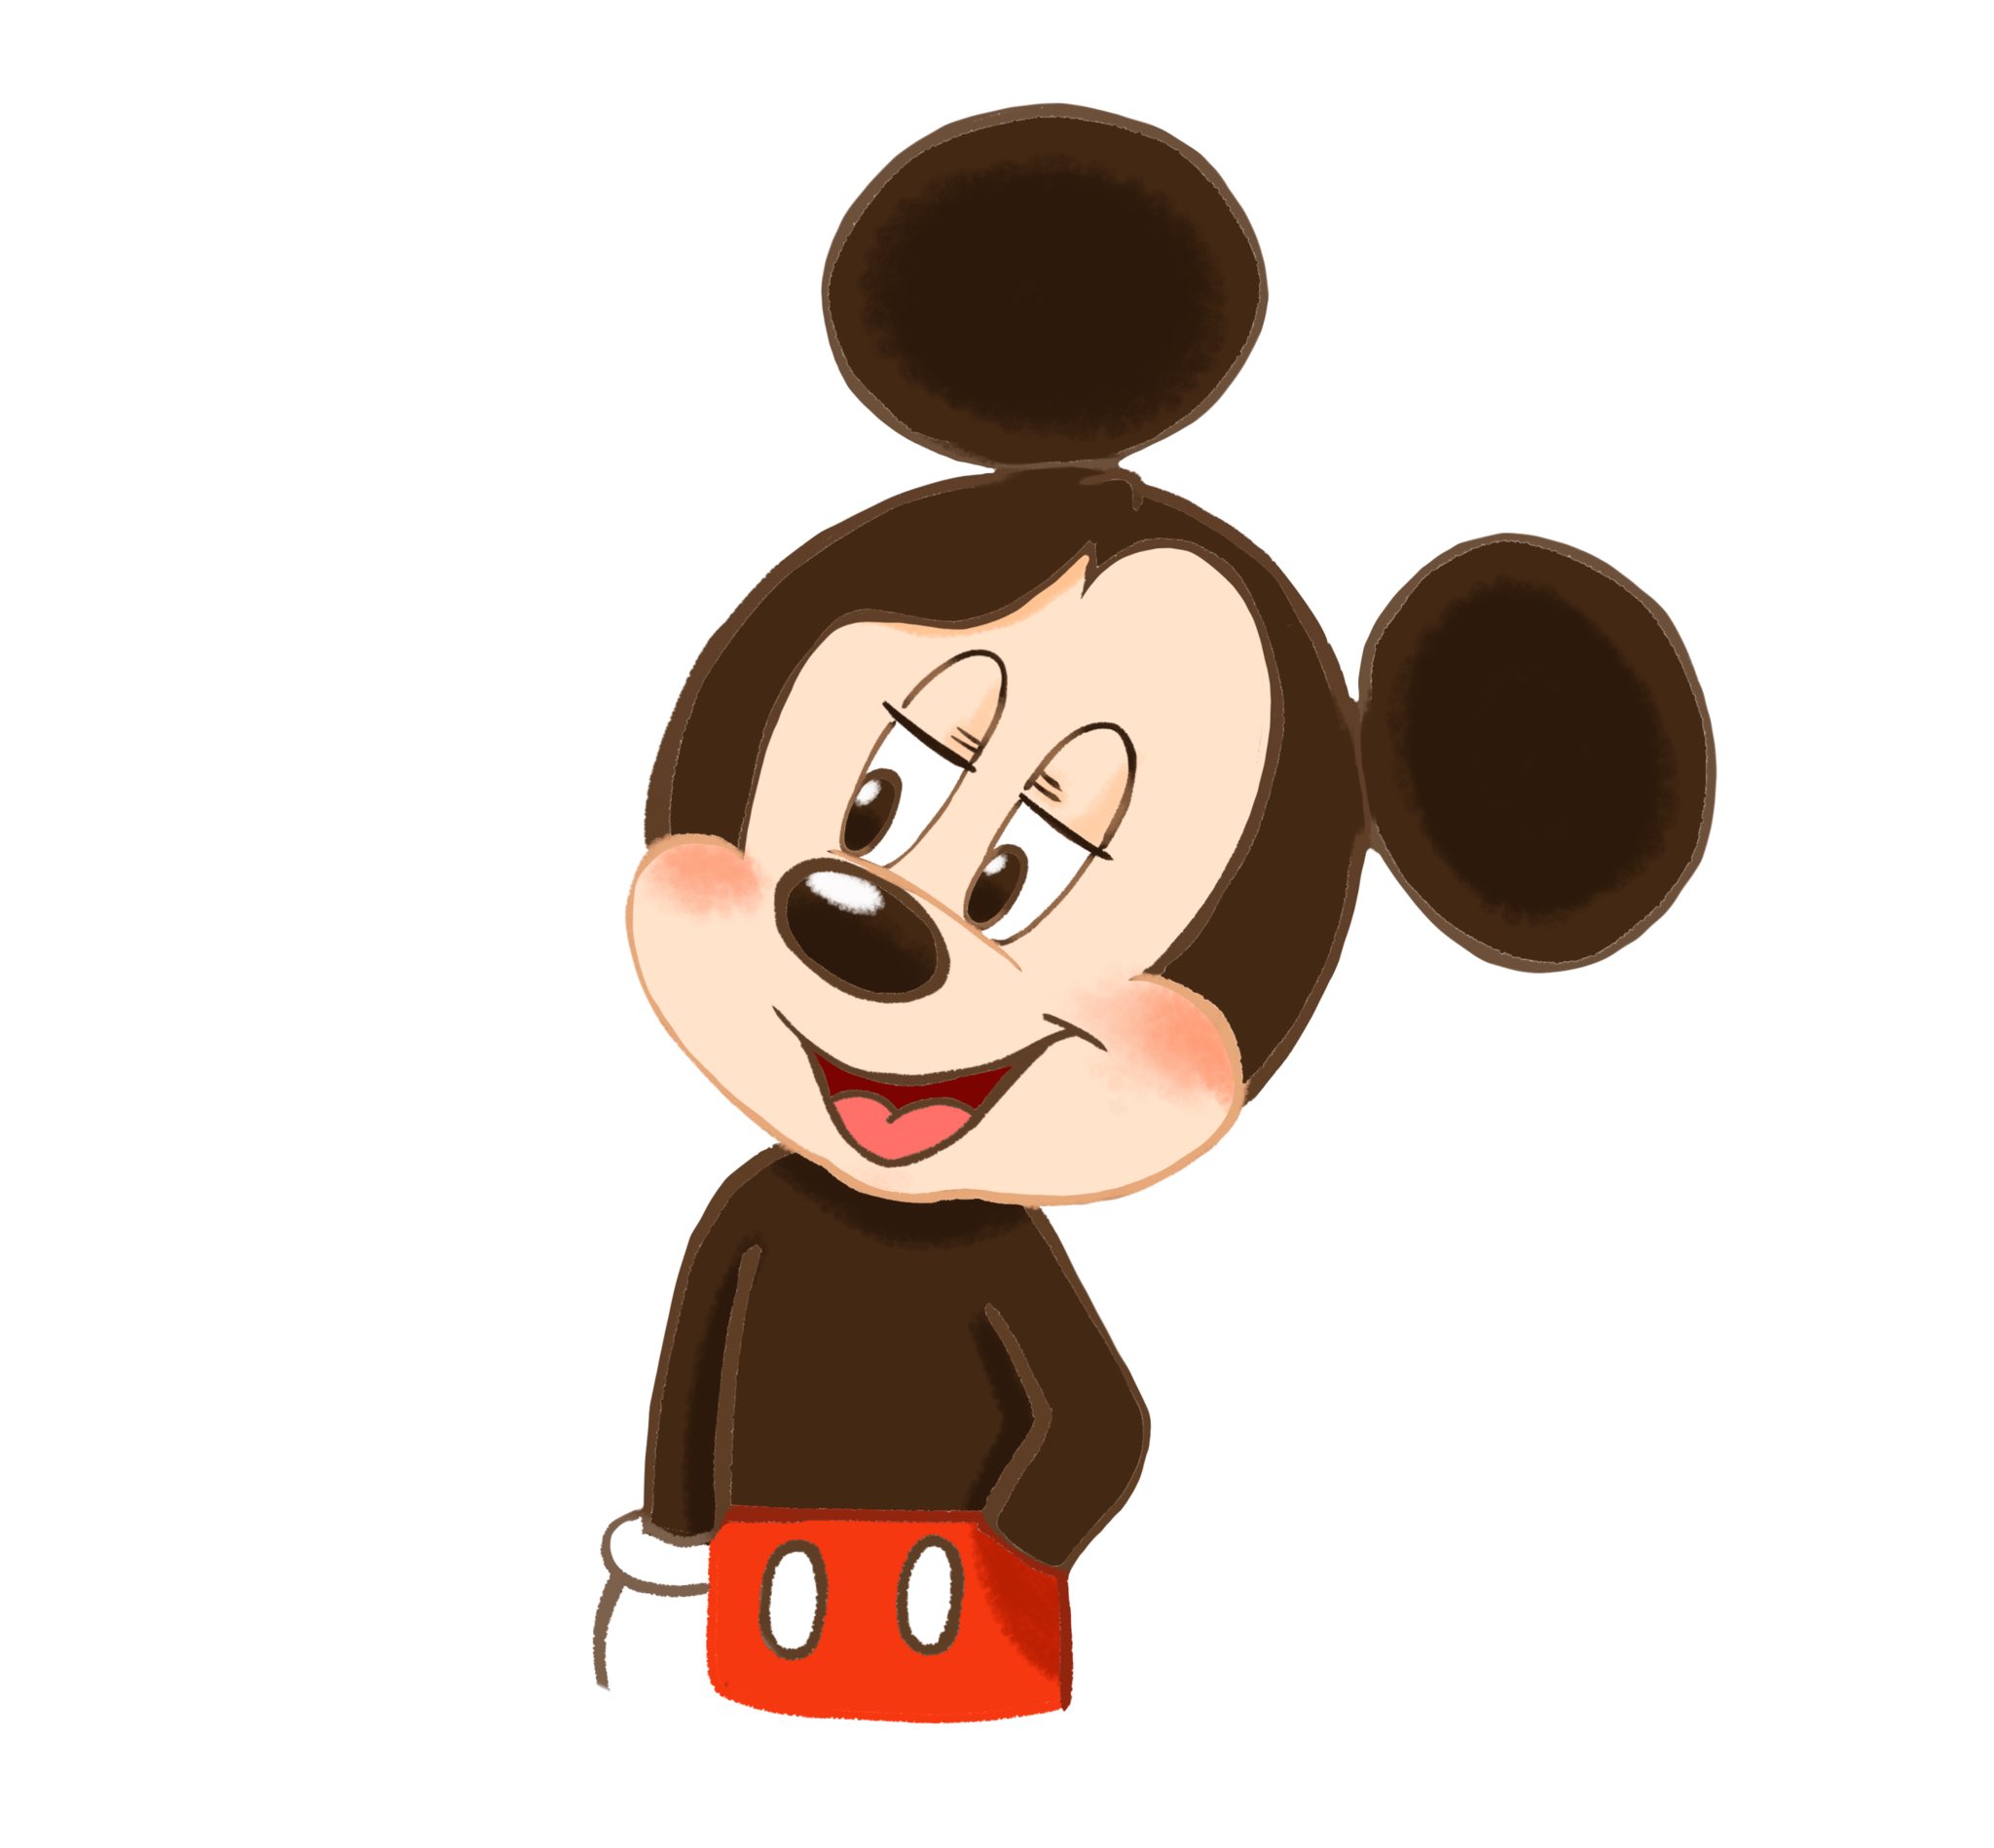 ぱずる 斜めに構えるミッキーマウスのイラスト いらすとやから学ぶディズニーイラスト T Co Zzbakk6kqa Twitter